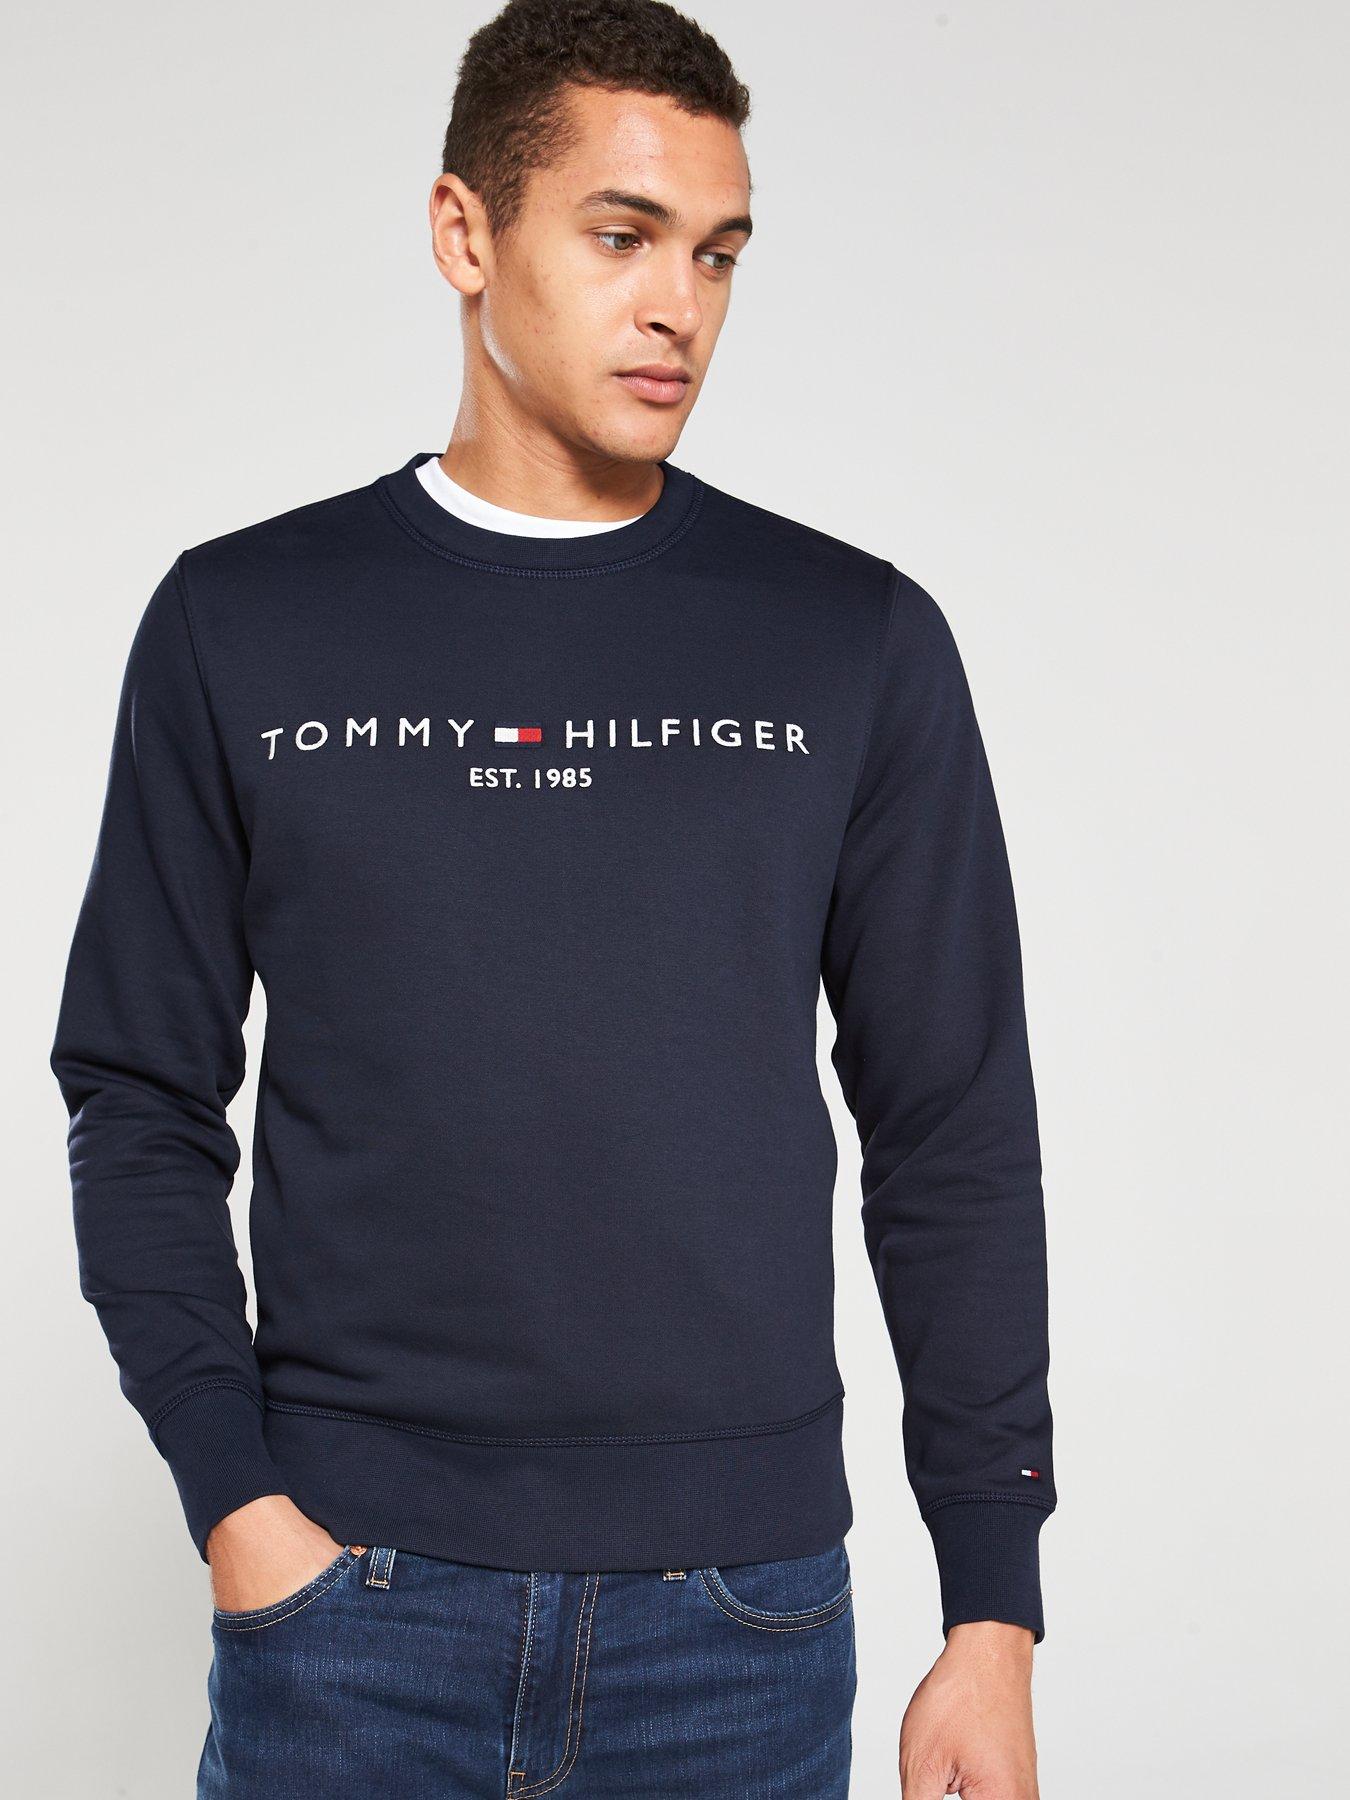 tommy hilfiger everest sweatshirt